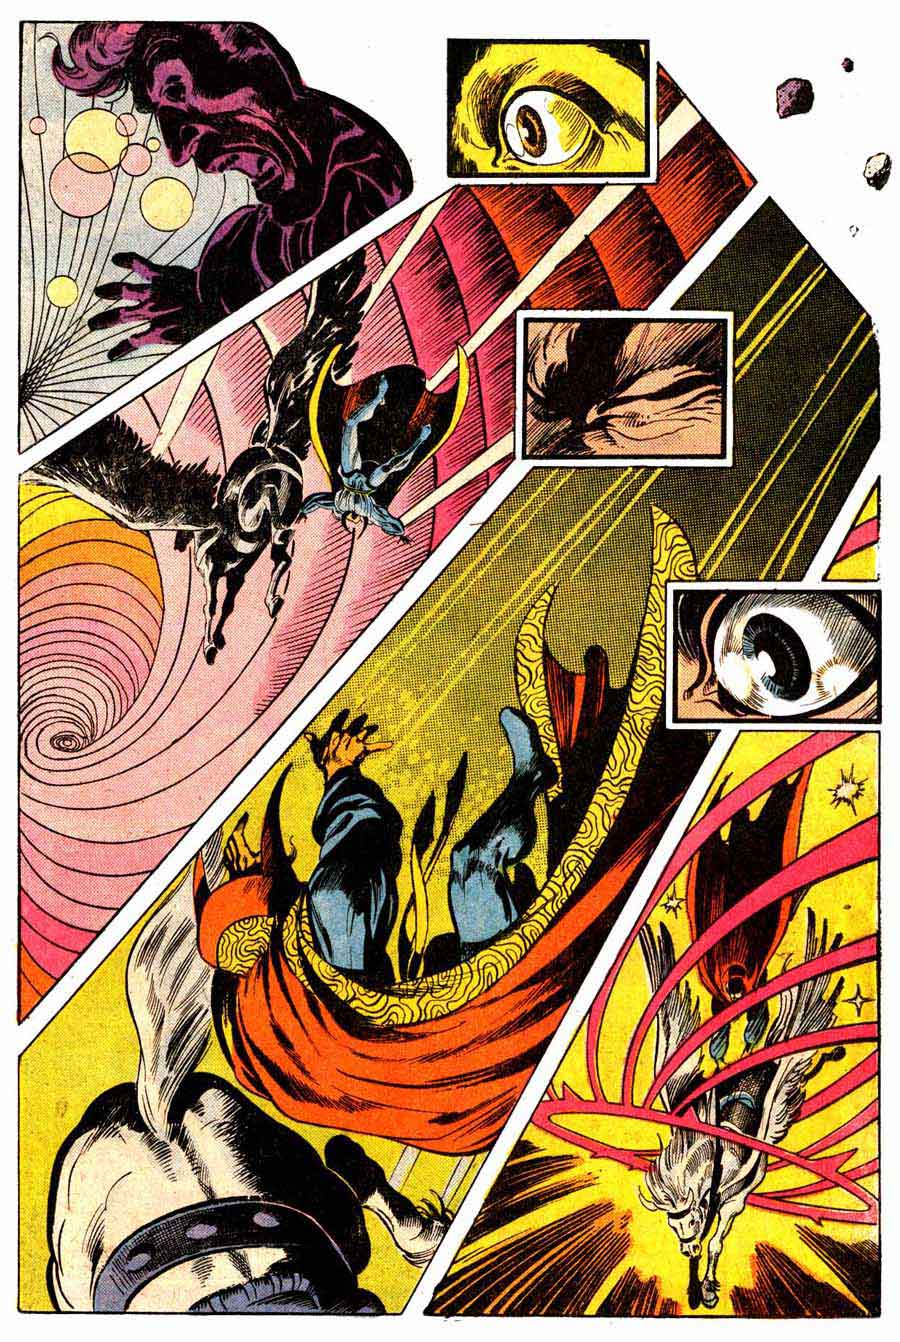 Frank Brunner bronze age 1970s marvel comic book page art - Doctor Strange v2 #4